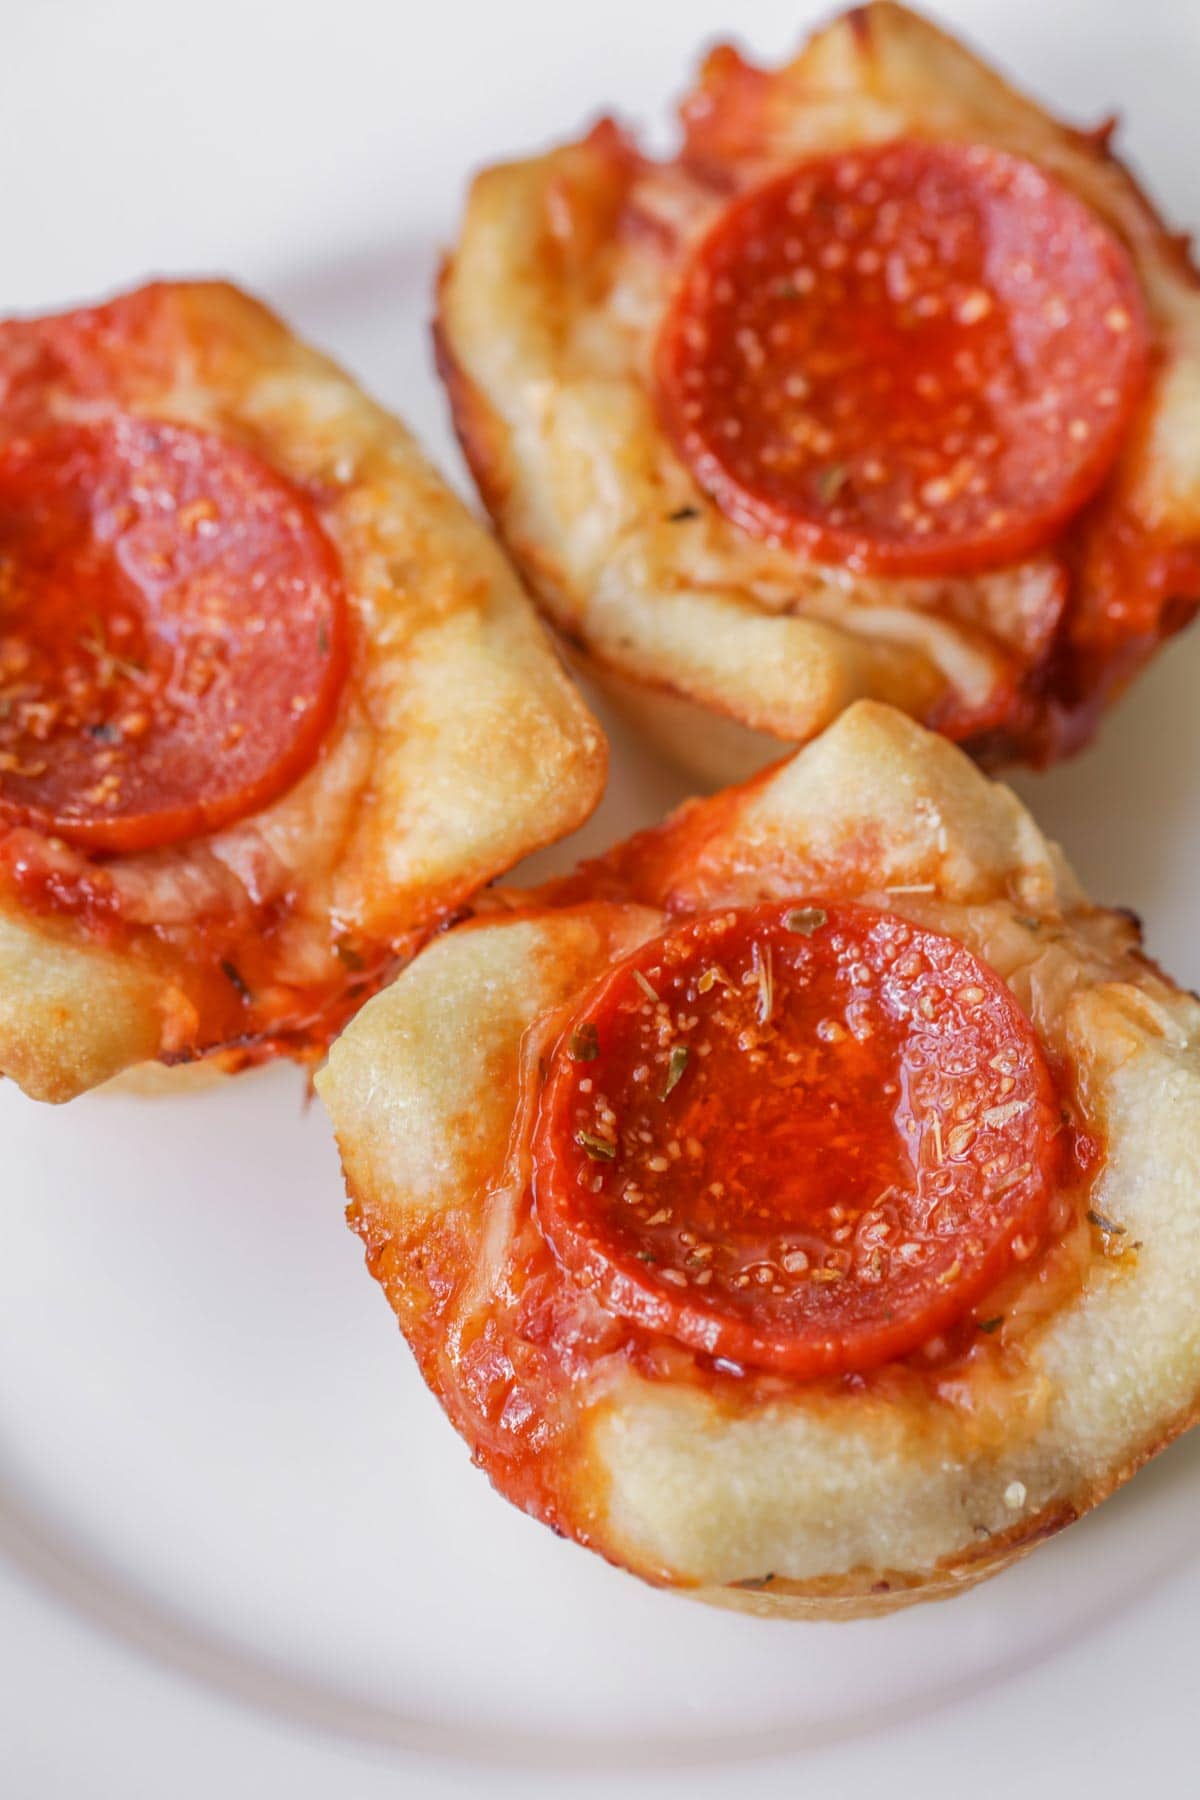 意大利圣诞晚餐创意- 3个迷你深盘披萨顶部有意大利辣香肠。